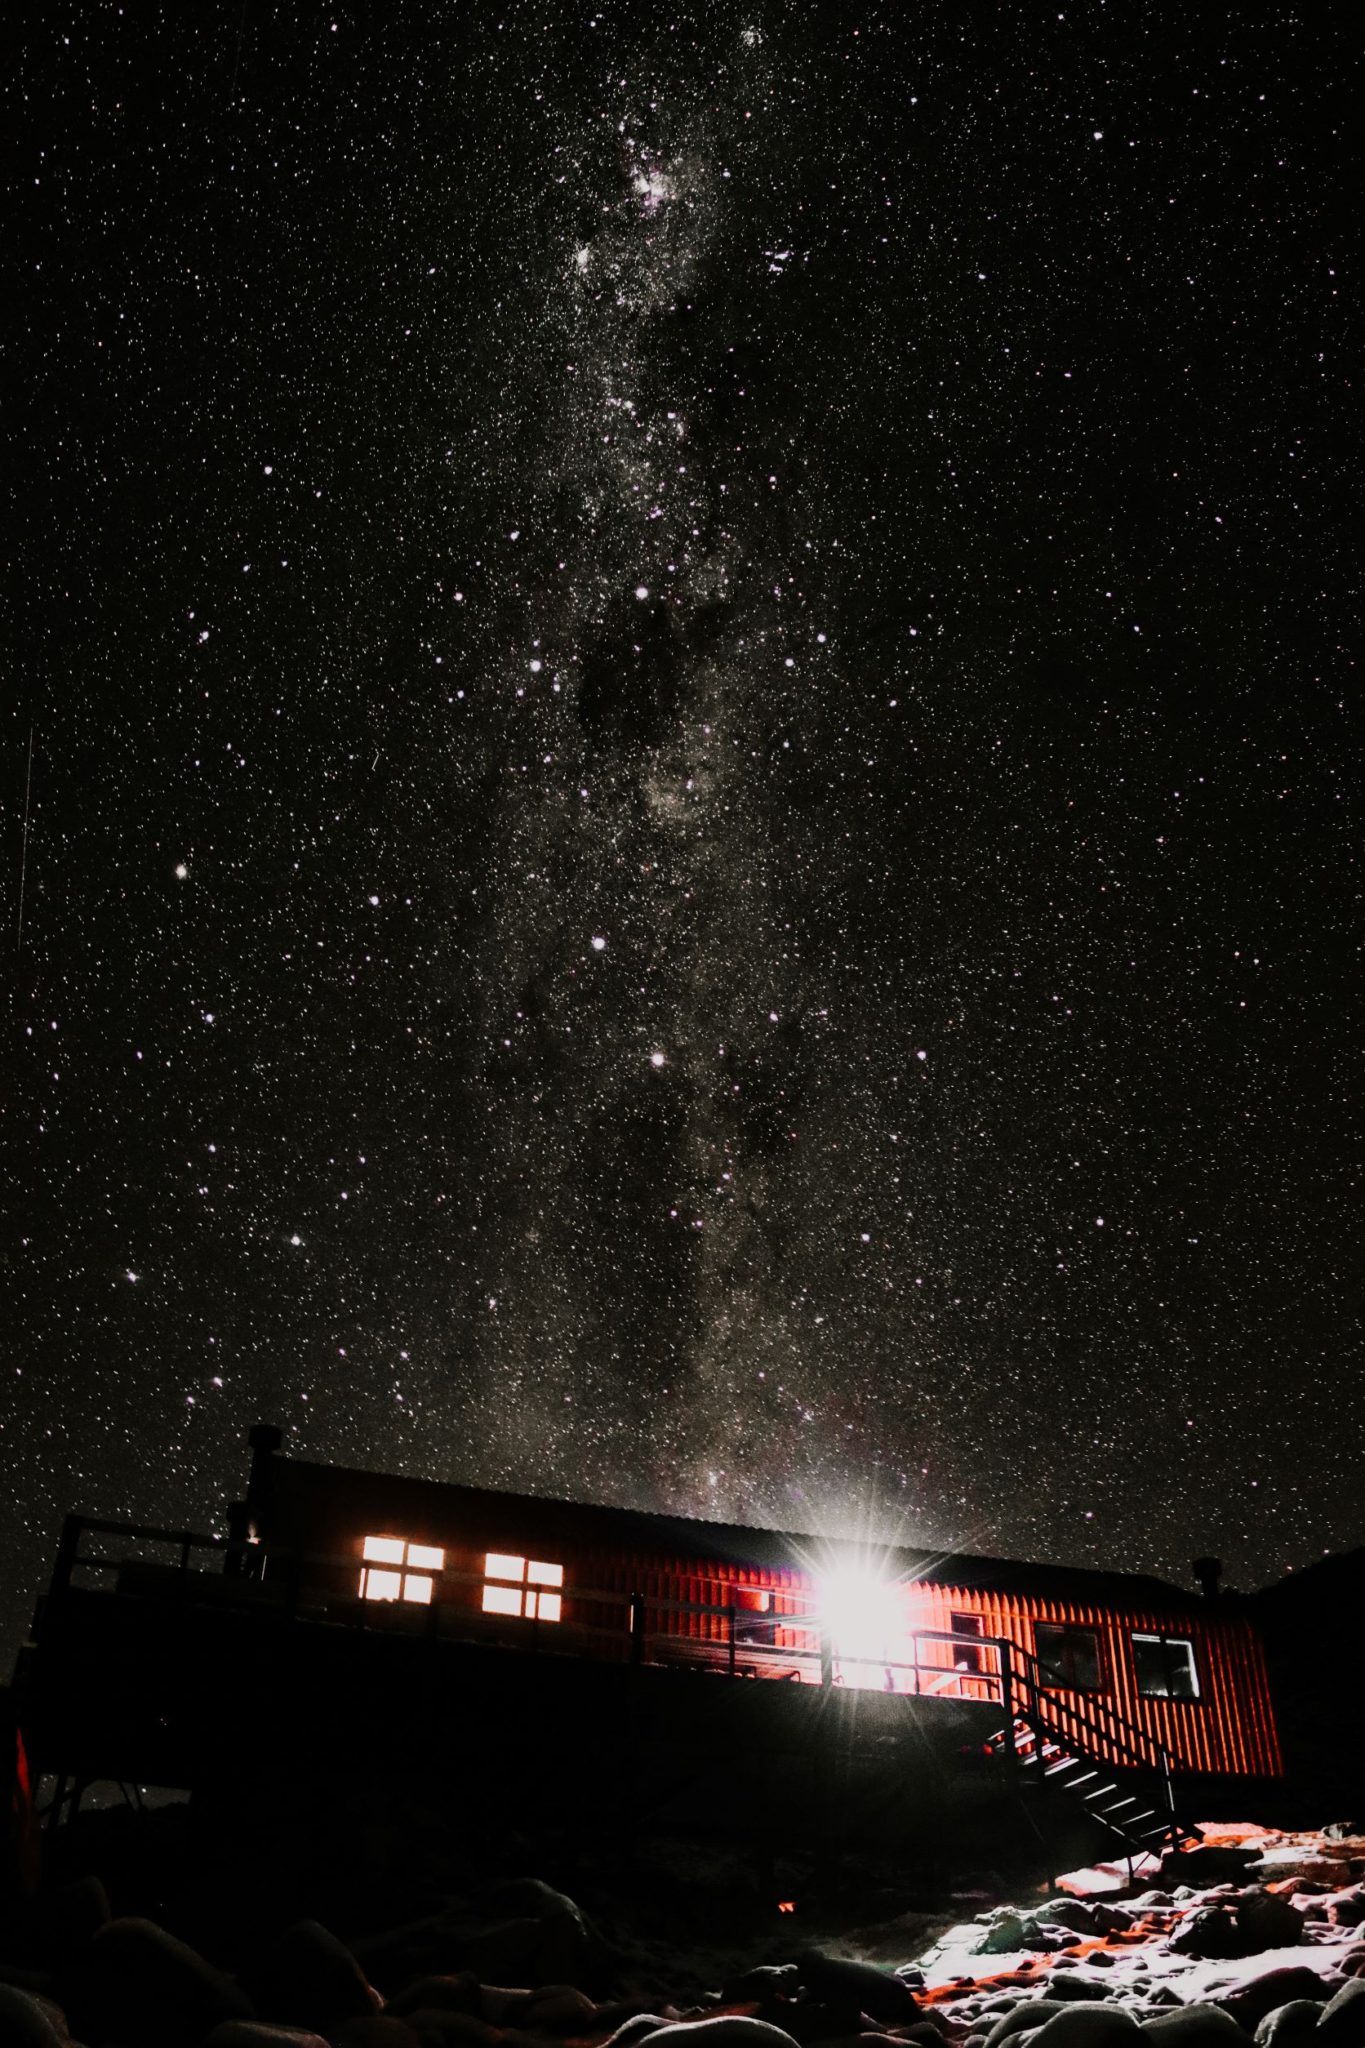 Mueller Hut Star Gazing, Aoraki Mt Cook National Park, New Zealand